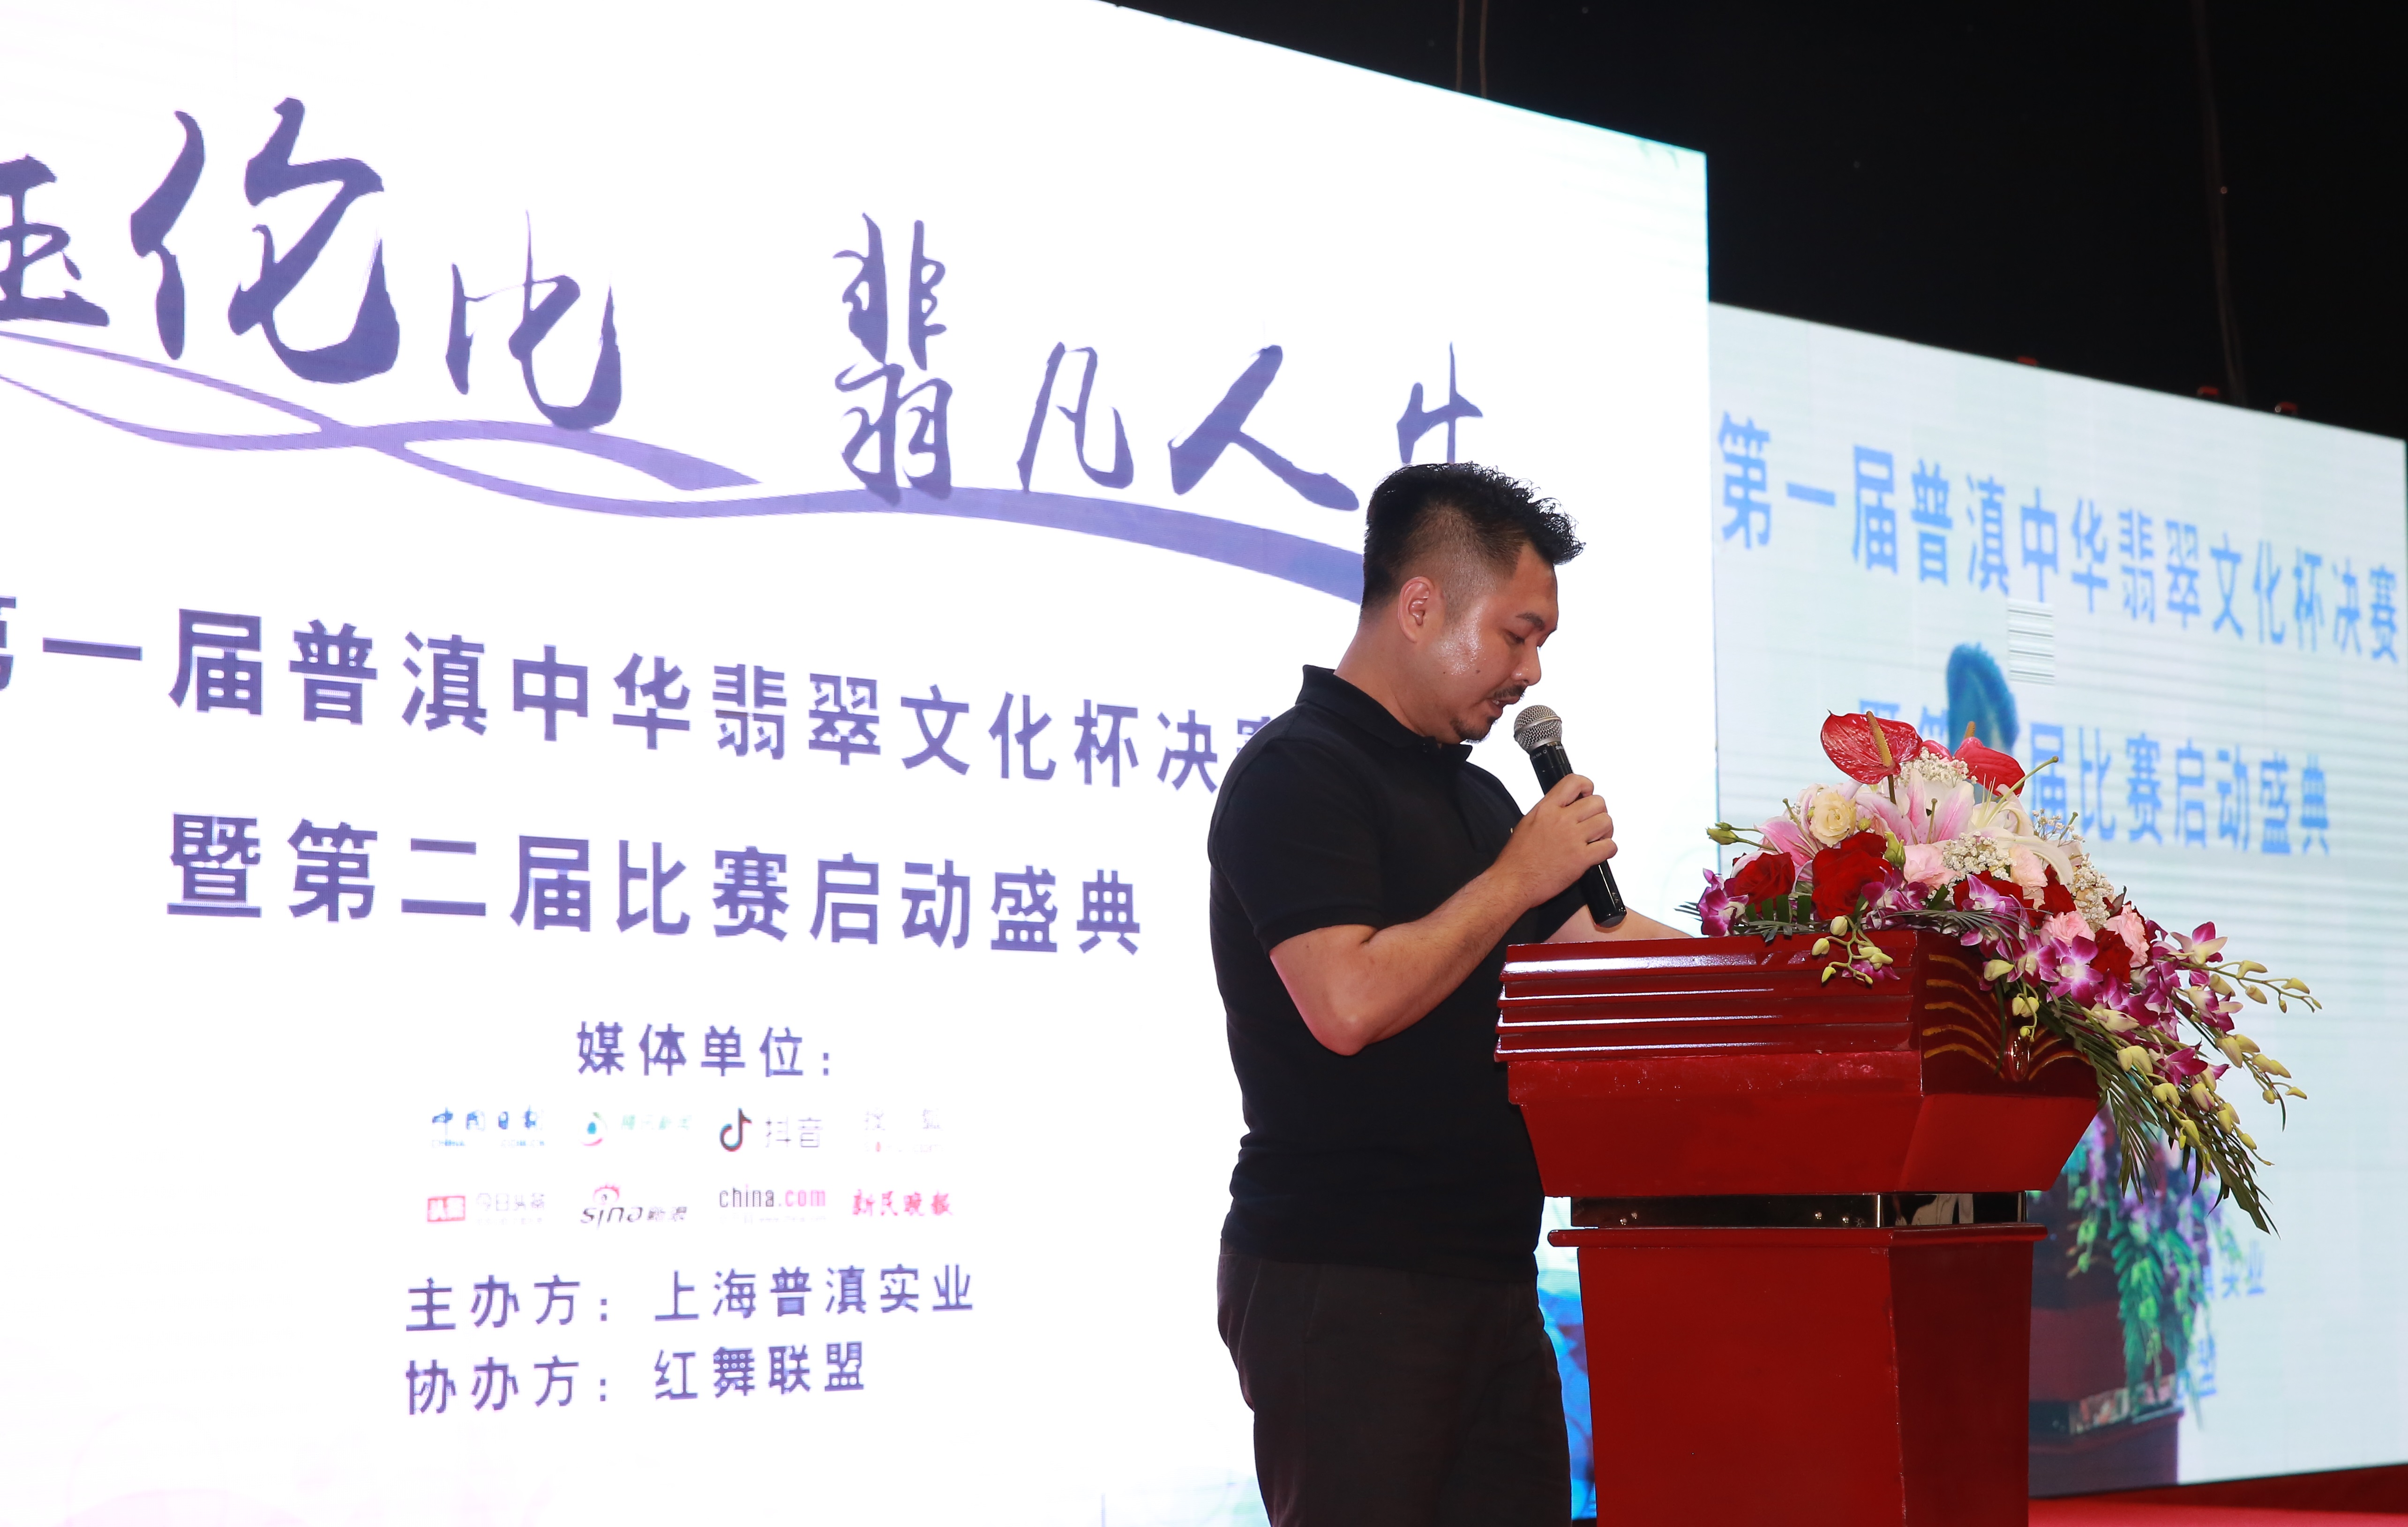 “普滇中华翡翠文化杯”在沪盛大举办 众人打造最具影响力文化赛事